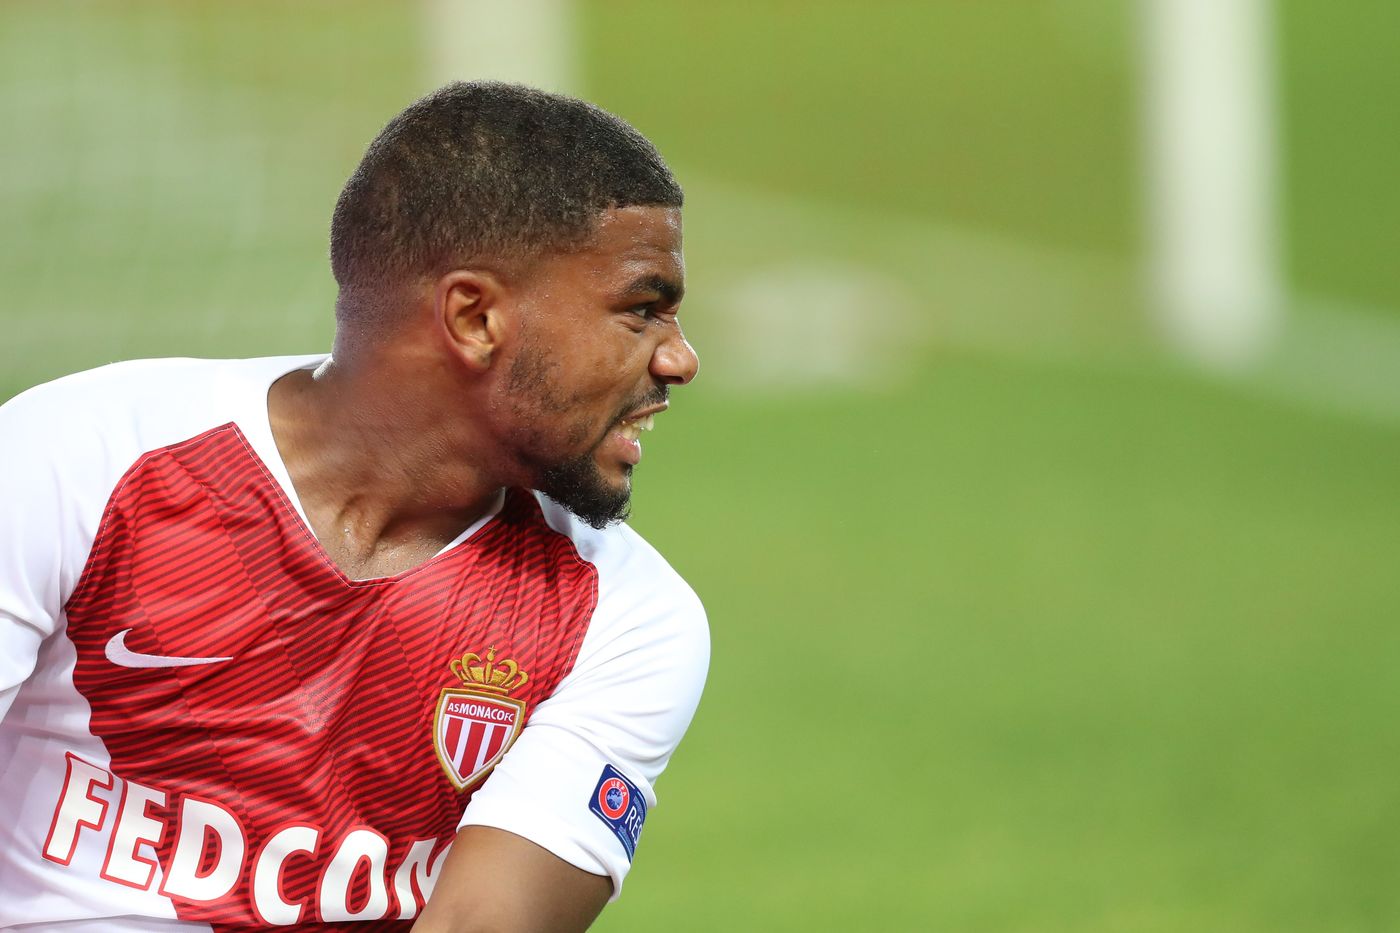 Monaco-Nimes 25 agosto: il pronostico di Ligue 1